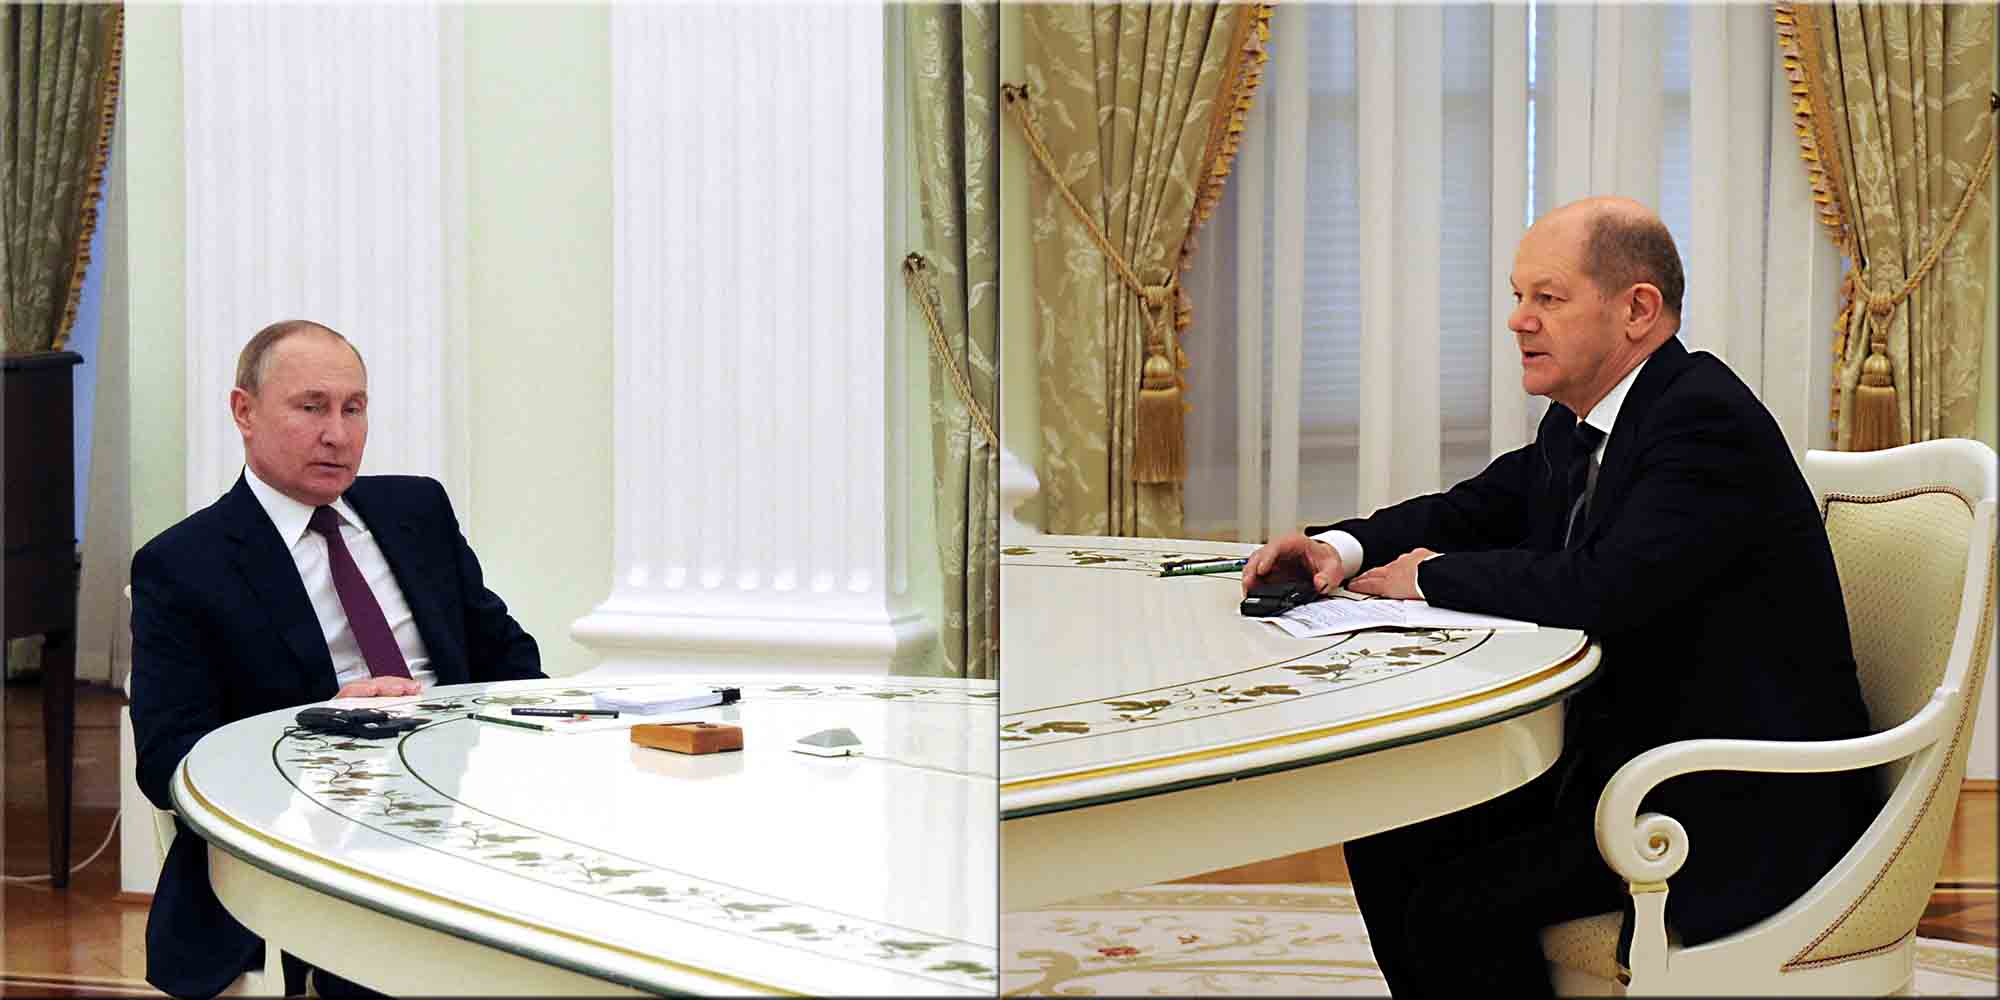 Ο πρόεδρος της Ρωσίας, Βλαντιμίρ Πούτιν, υποδέχτηκε τον Όλαφ Σολτς